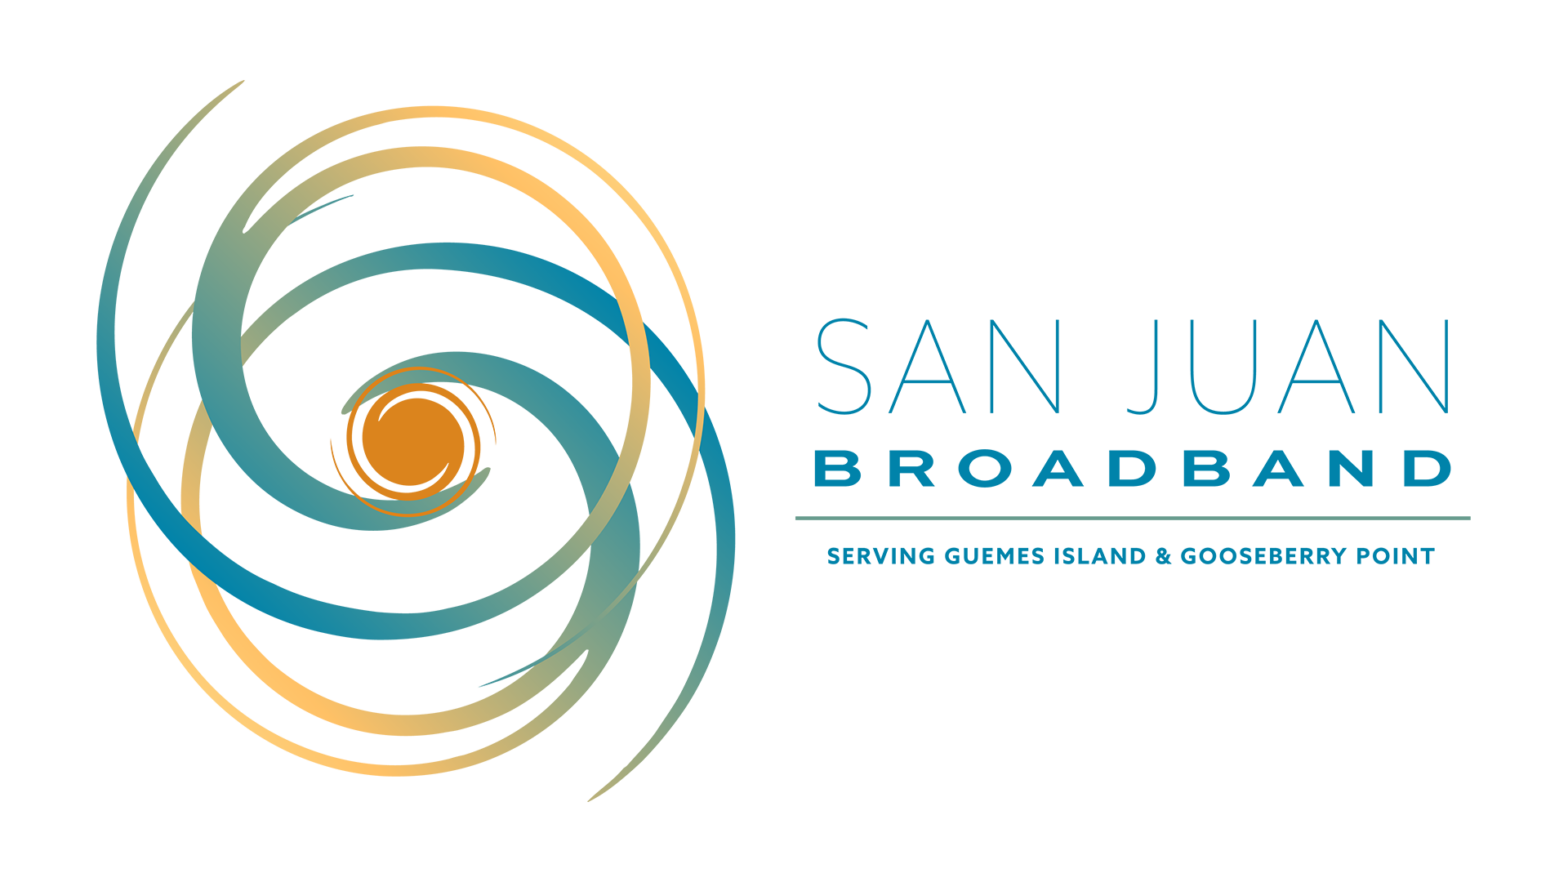 San Juan Cable is now San Juan Broadband!